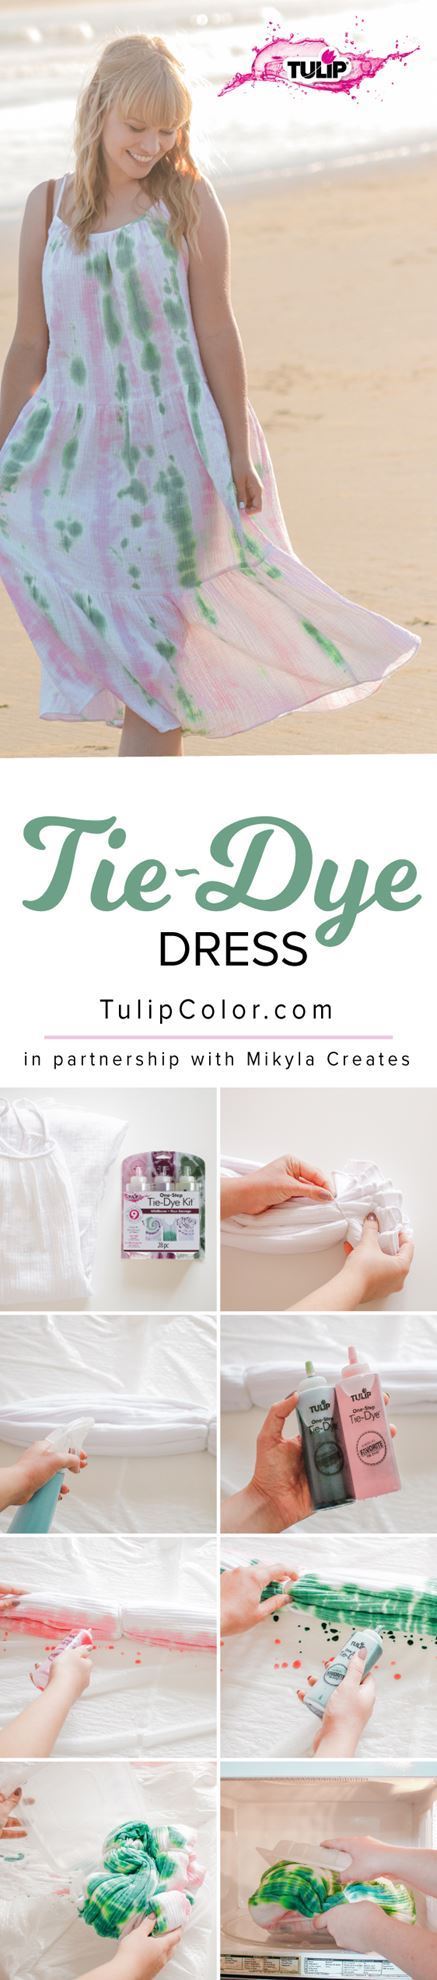 Tie-Dye Dress